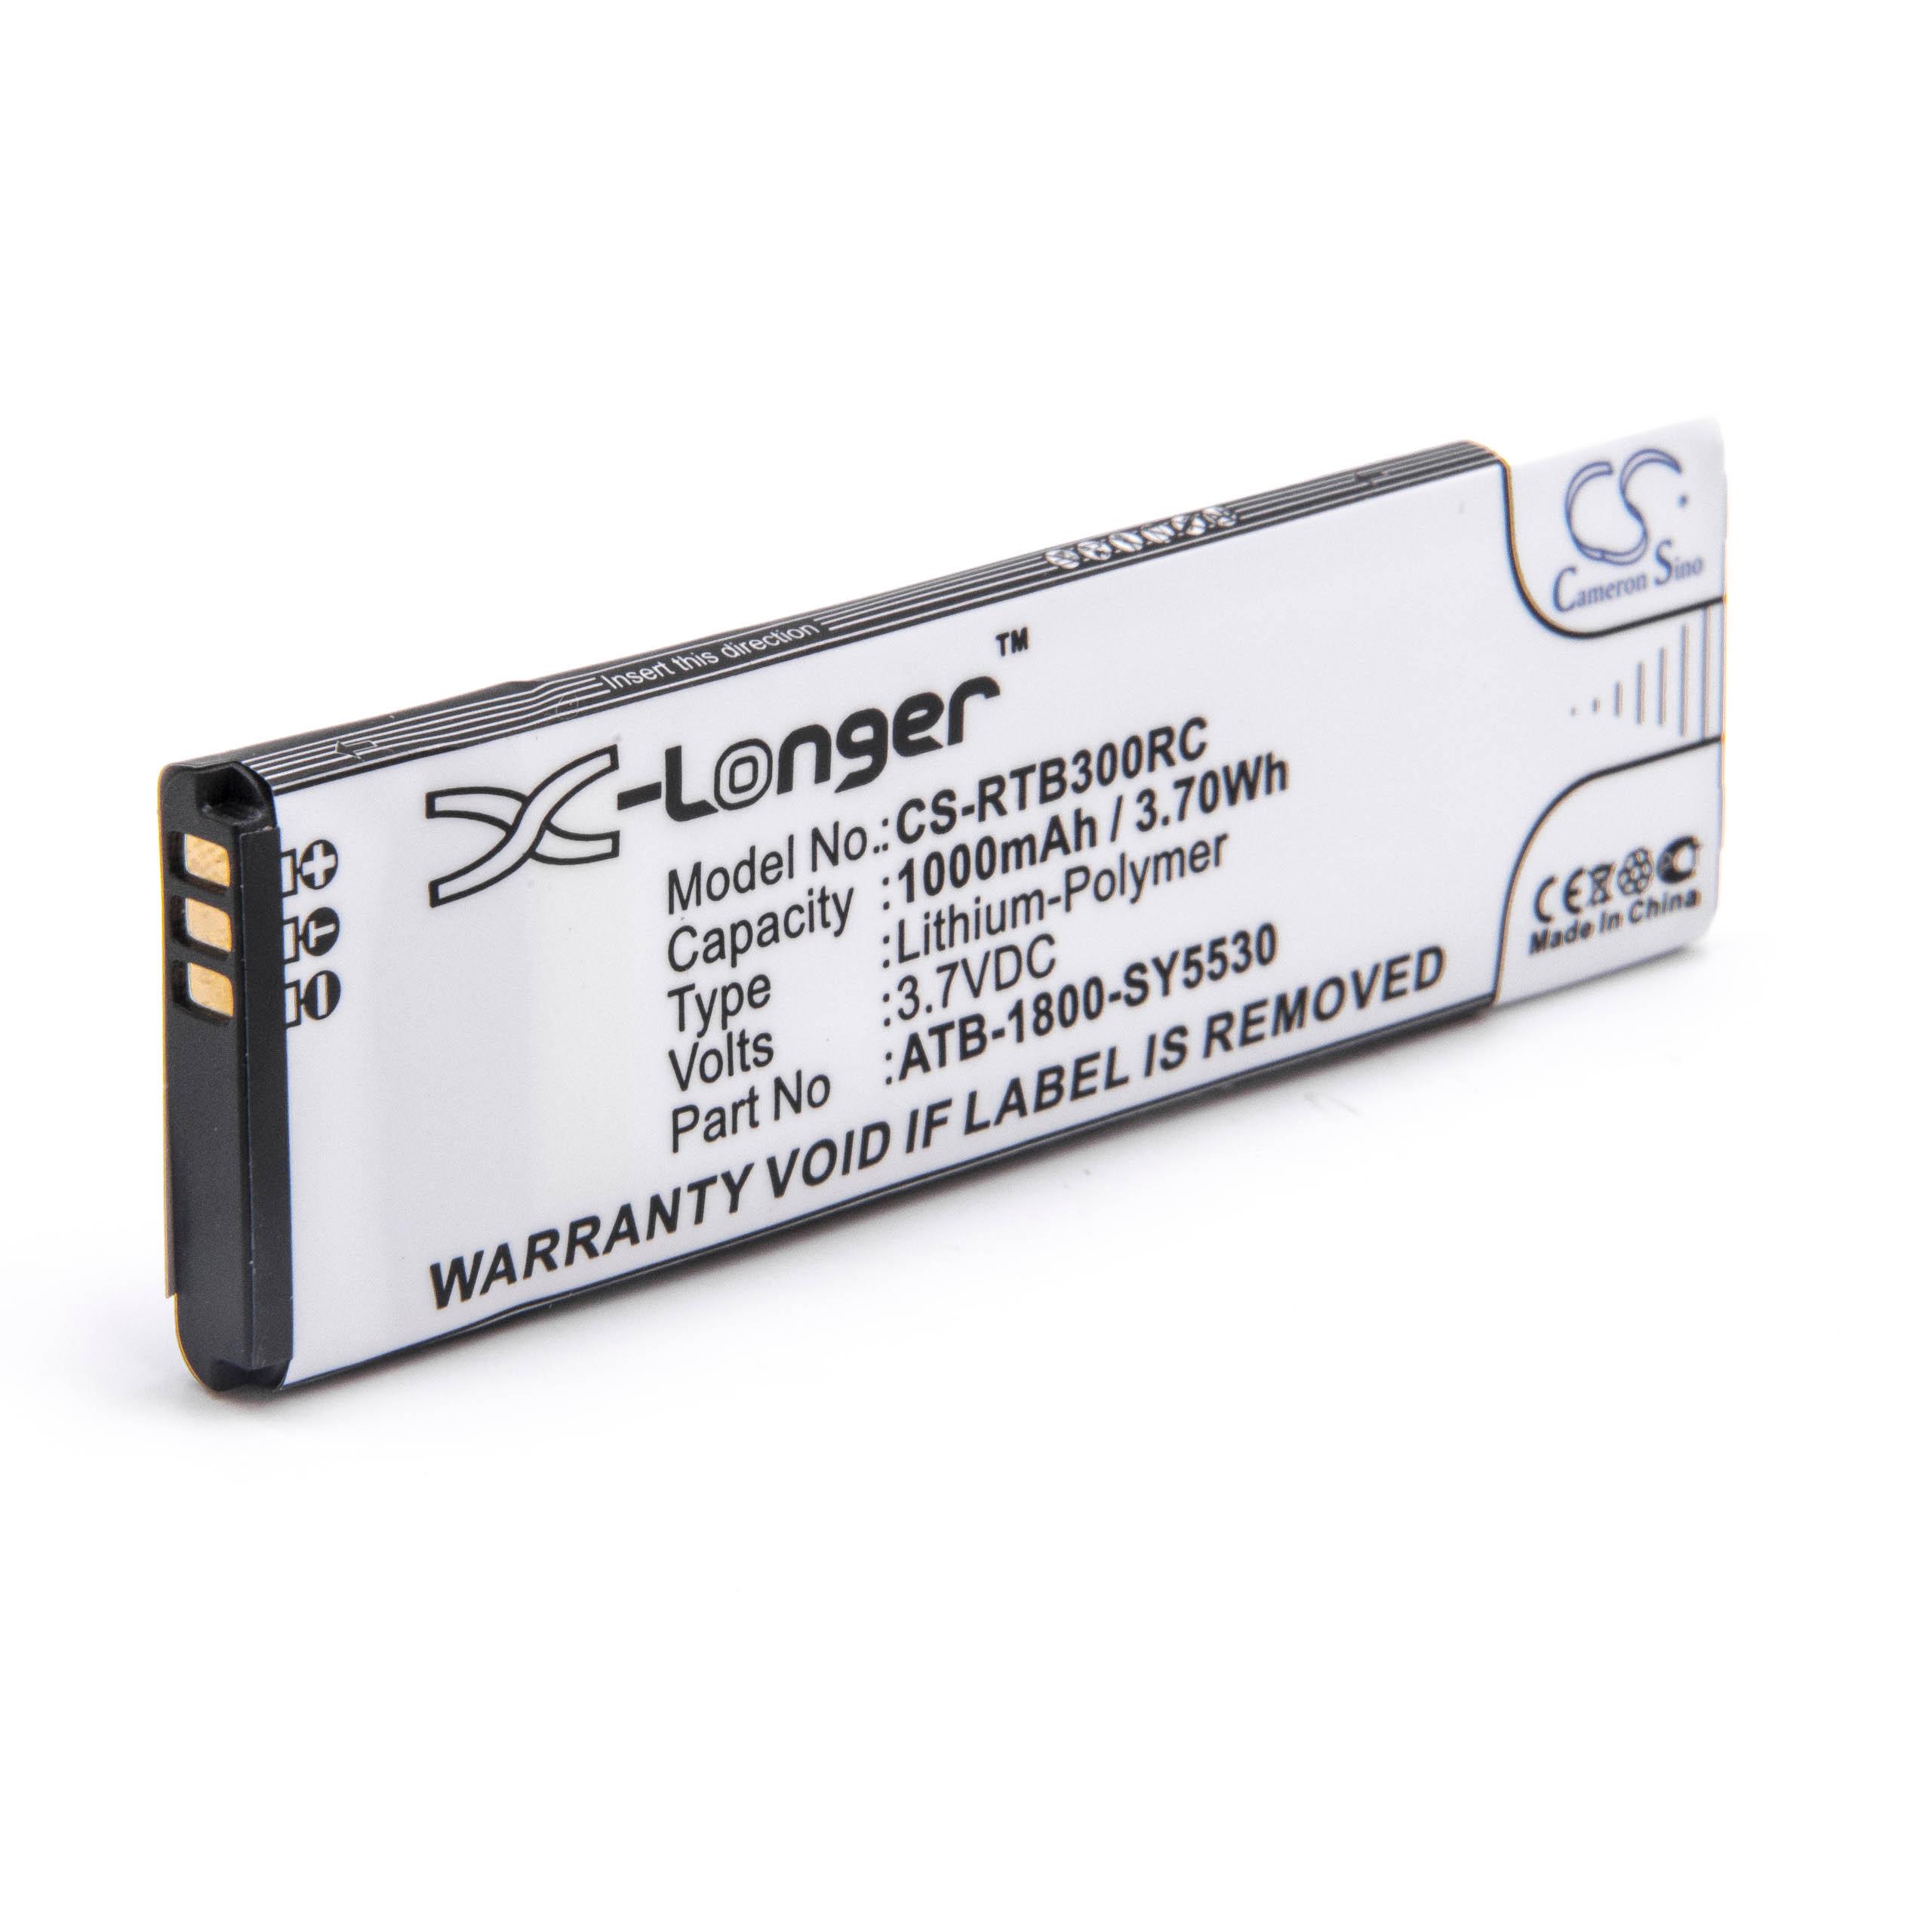 Batterie remplace RTI ATB-1800-SY5530 pour télécommande - 1000mAh 3,7V Li-polymère